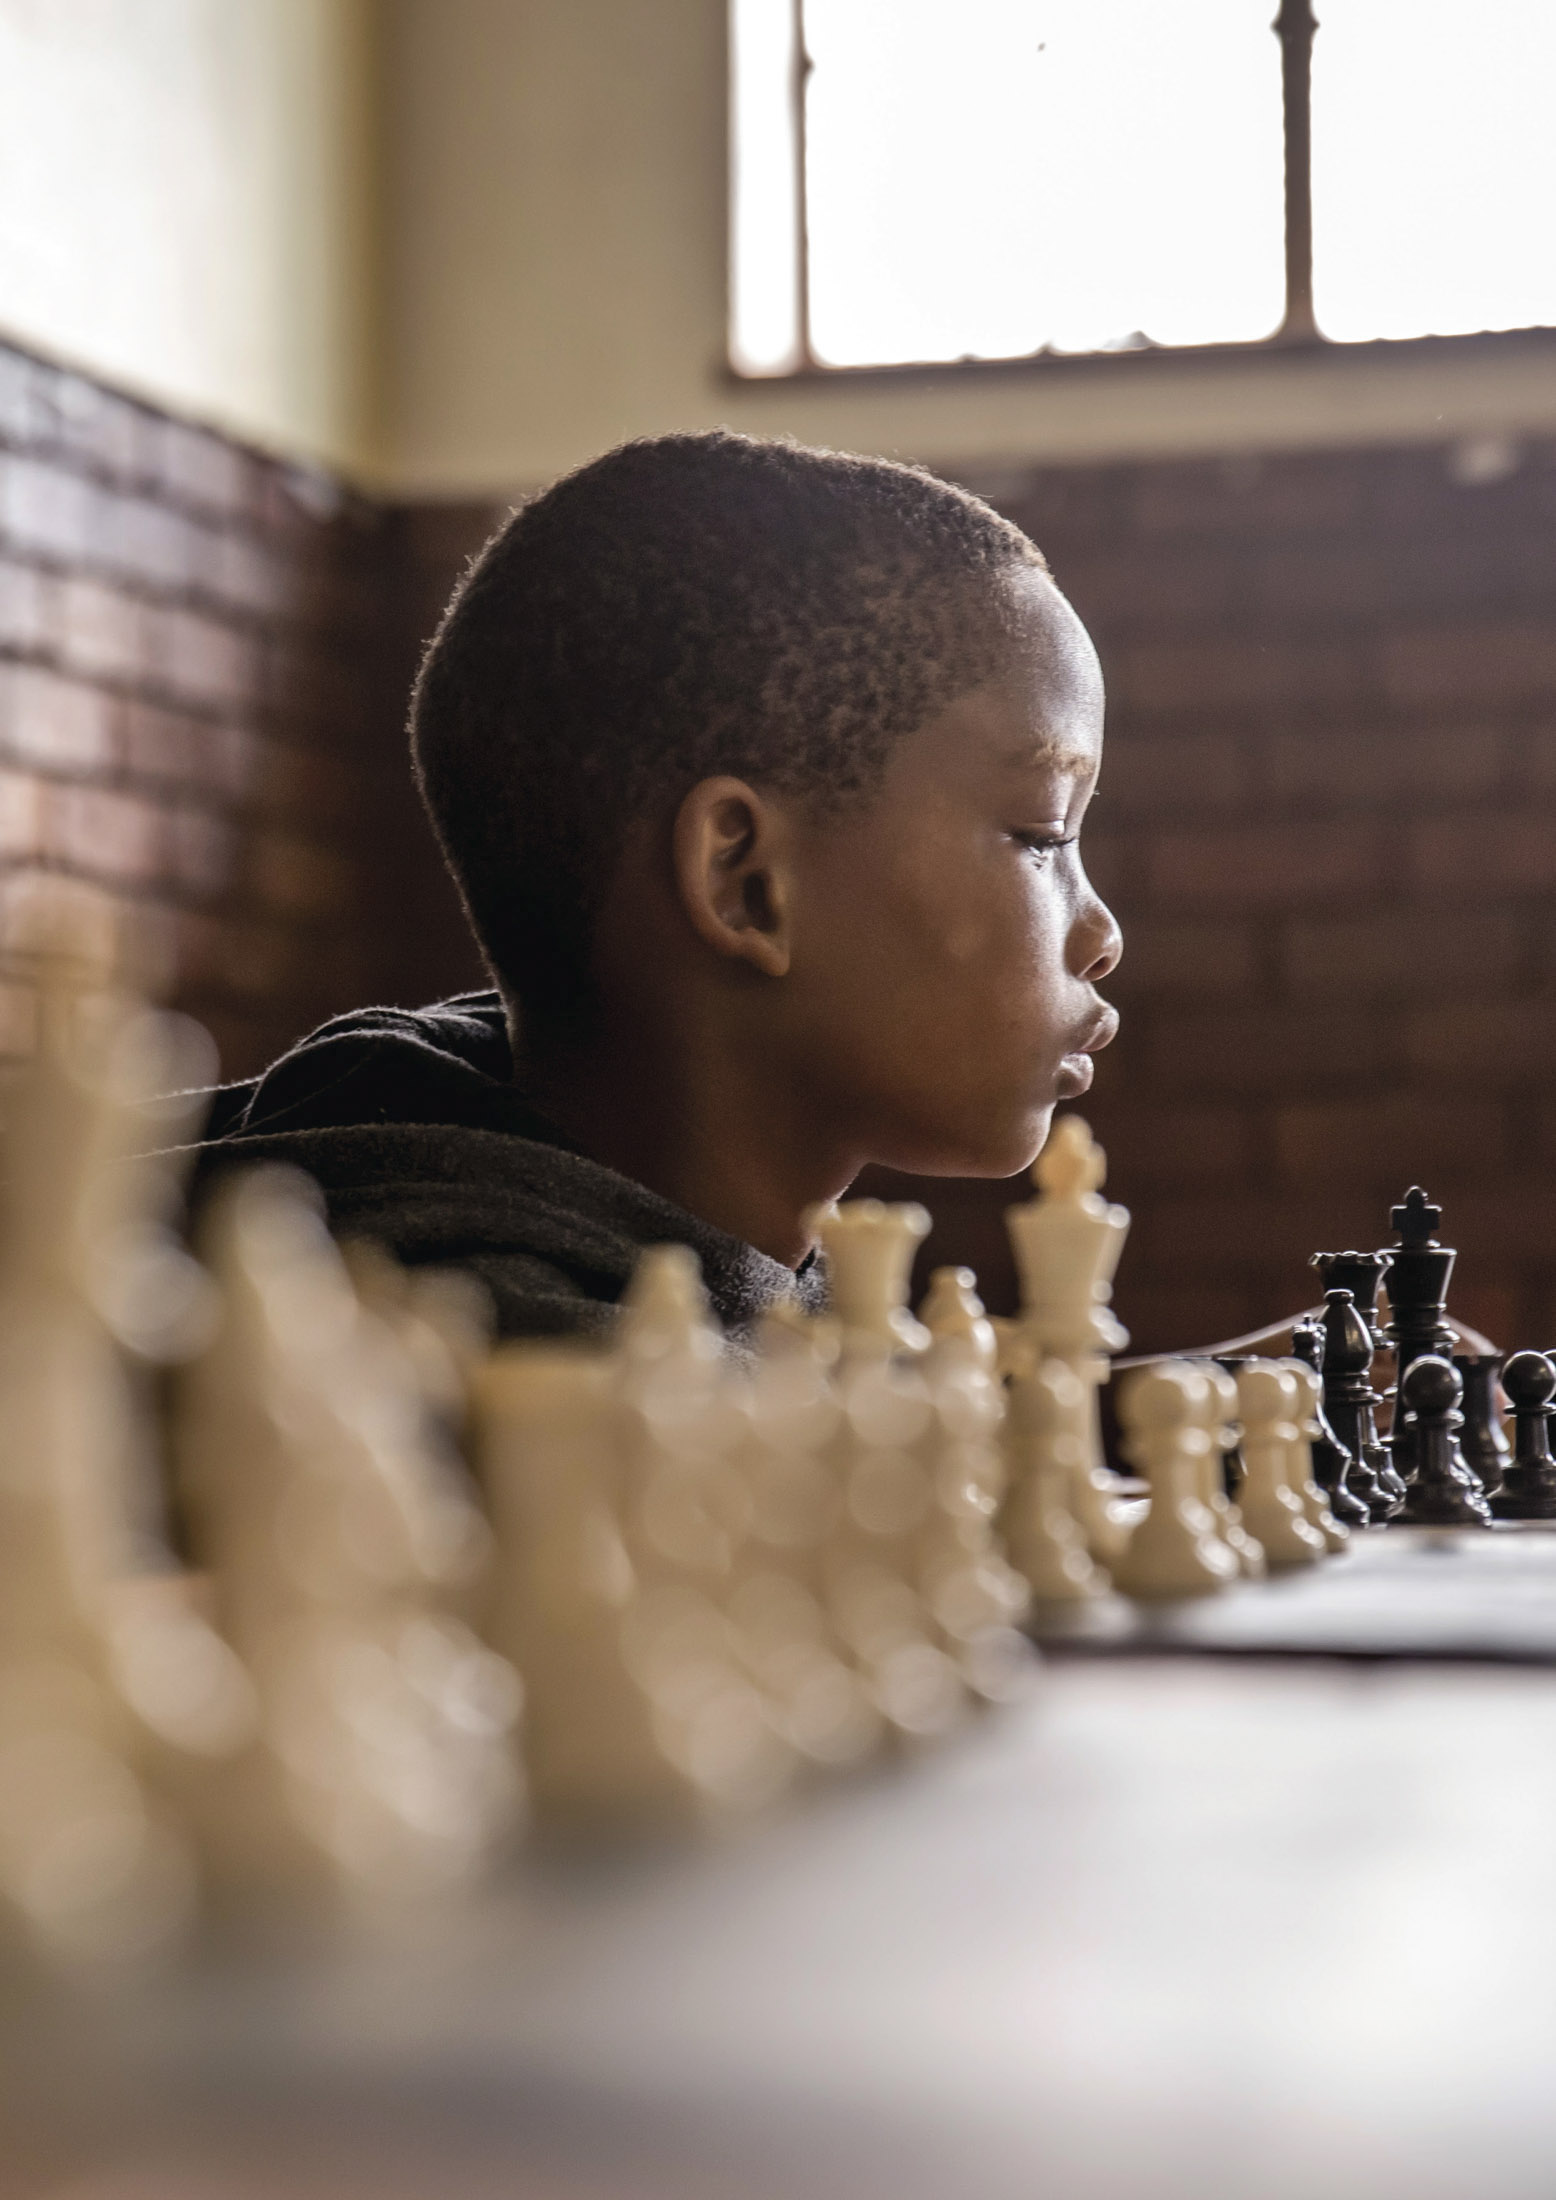 Ein kleiner Junge spielt Schach und ist in Gedanken versunken. Er konzentriert sich in einem warm beleuchteten Raum intensiv auf das Schachbrett. © Fotografie Tomas Rodriguez